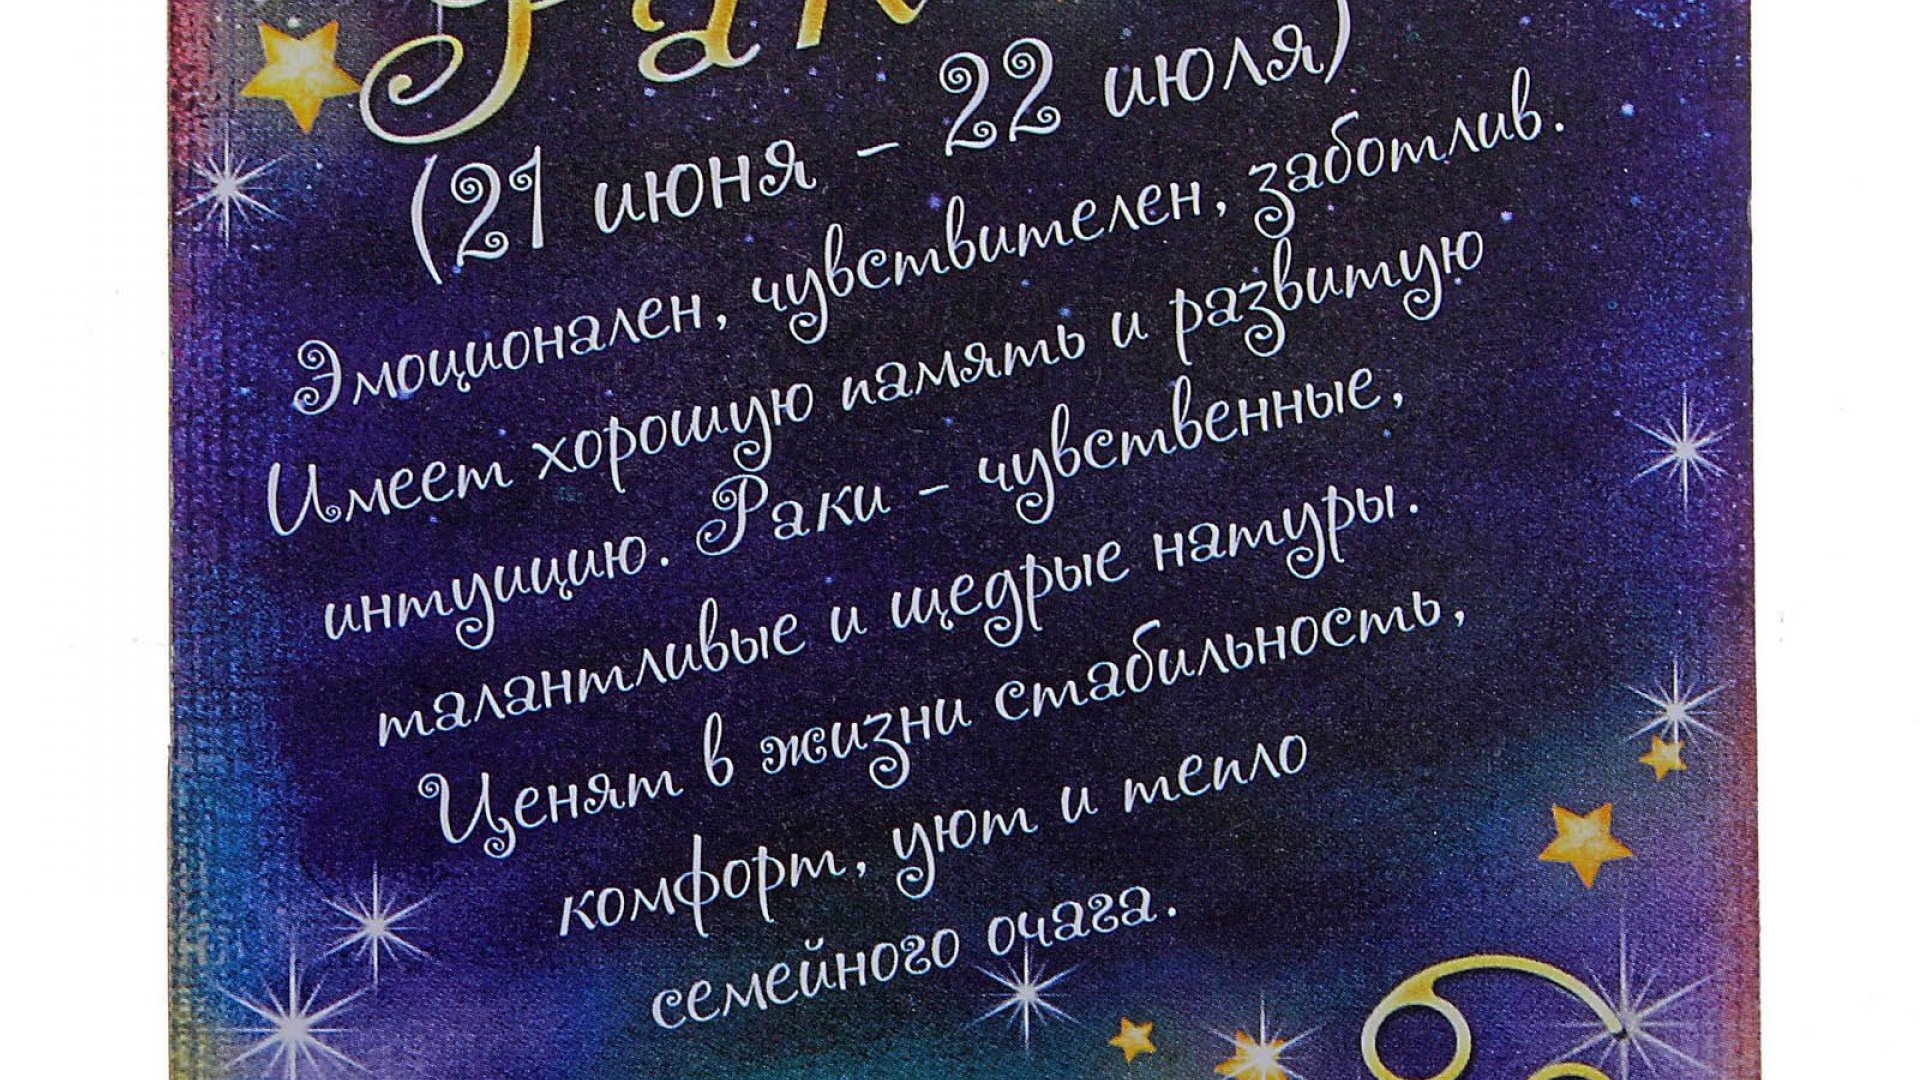 Зодиака день рождения. Поздравление овна с днем рождения. Астрологическое поздравление с днем рождения. Мой знак зодиака весы. Астрологическая открытка с днем рождения.